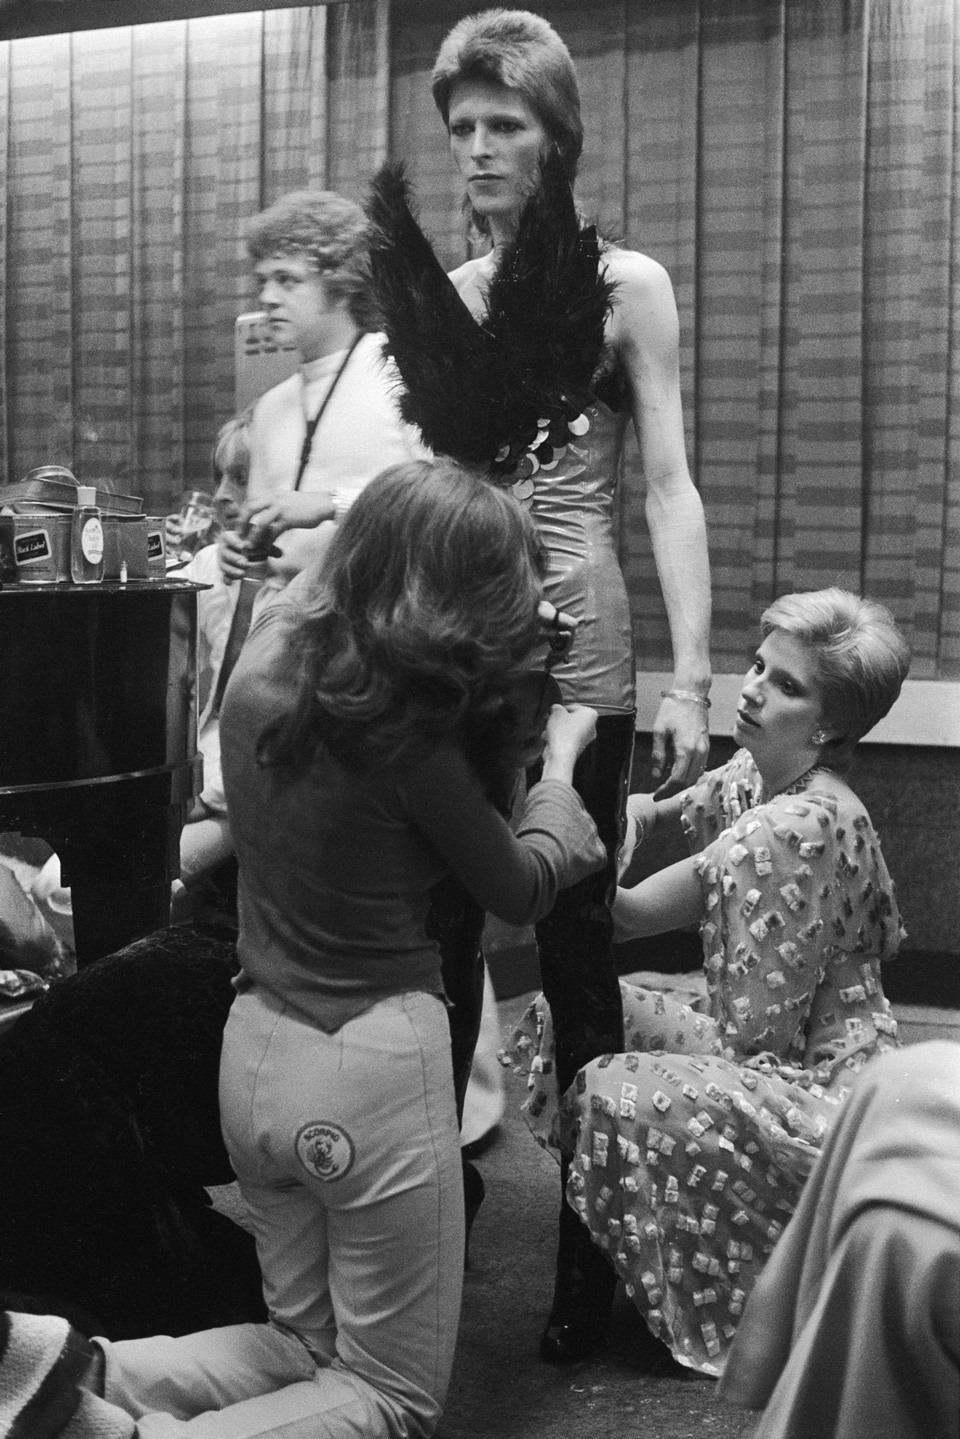 (دايفيد بوي) سنة 1973 وهو يرتدي أحد الأزياء الفريدة من إعداد زوجته (آنجي بوي) على يمين الصورة ومساعدتها.